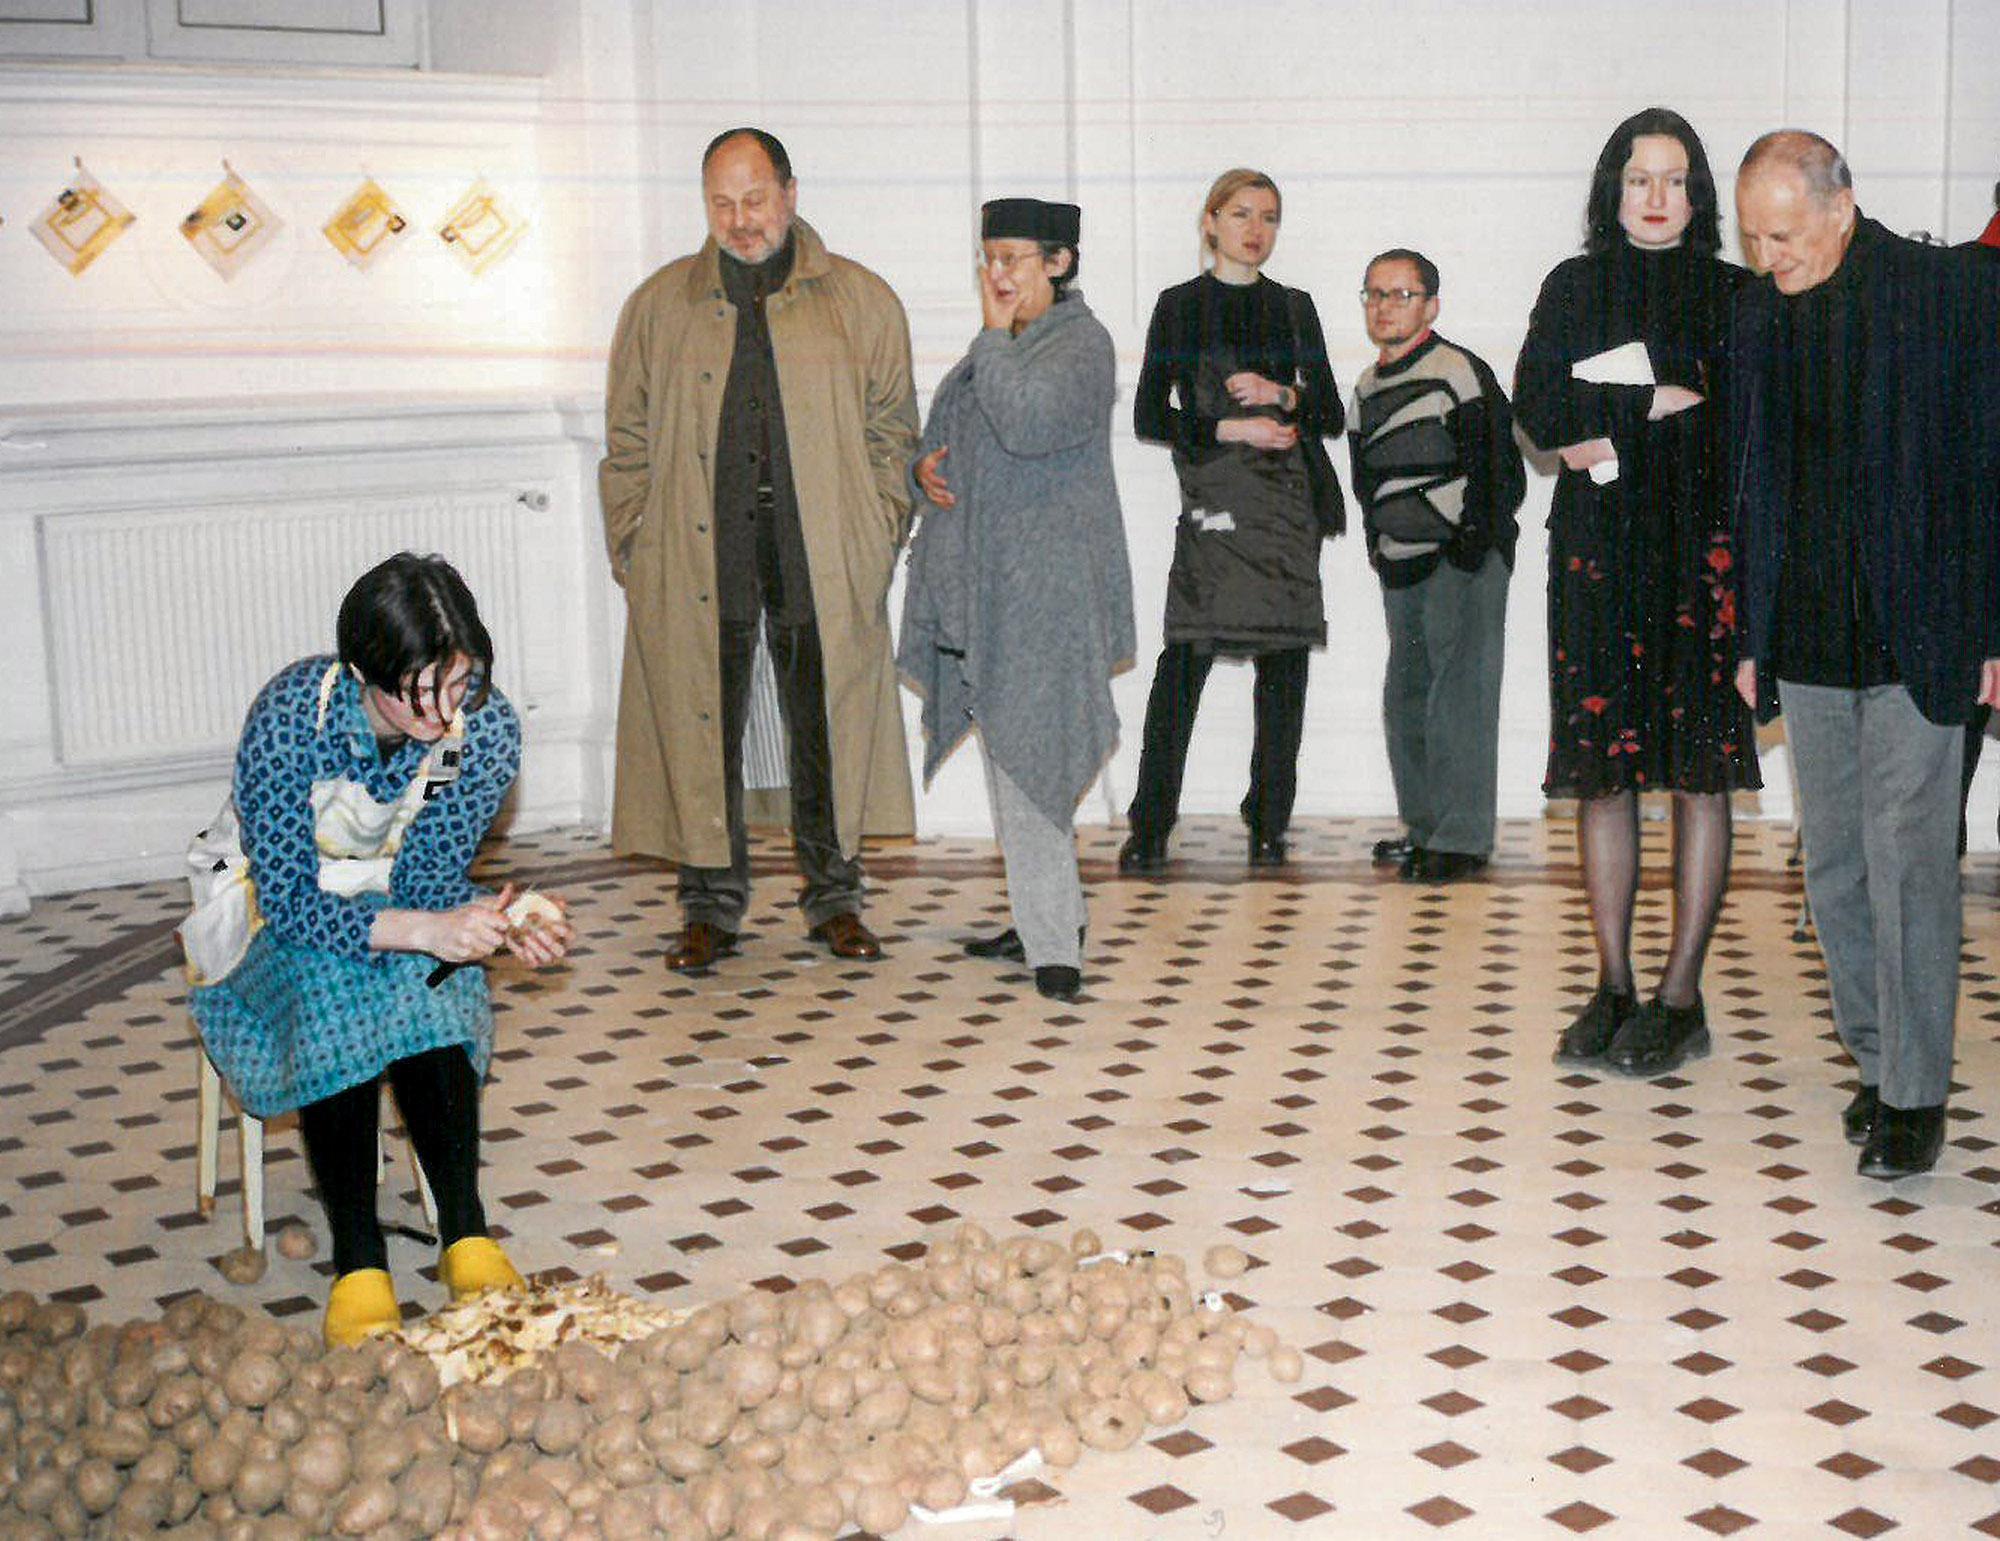  Performance „Obieranie ziemniaków”Julity Wójcik wzbudził nie mniejsze emocje niż incydent z szablą (2001). (Fot. archiwum Zachęty)